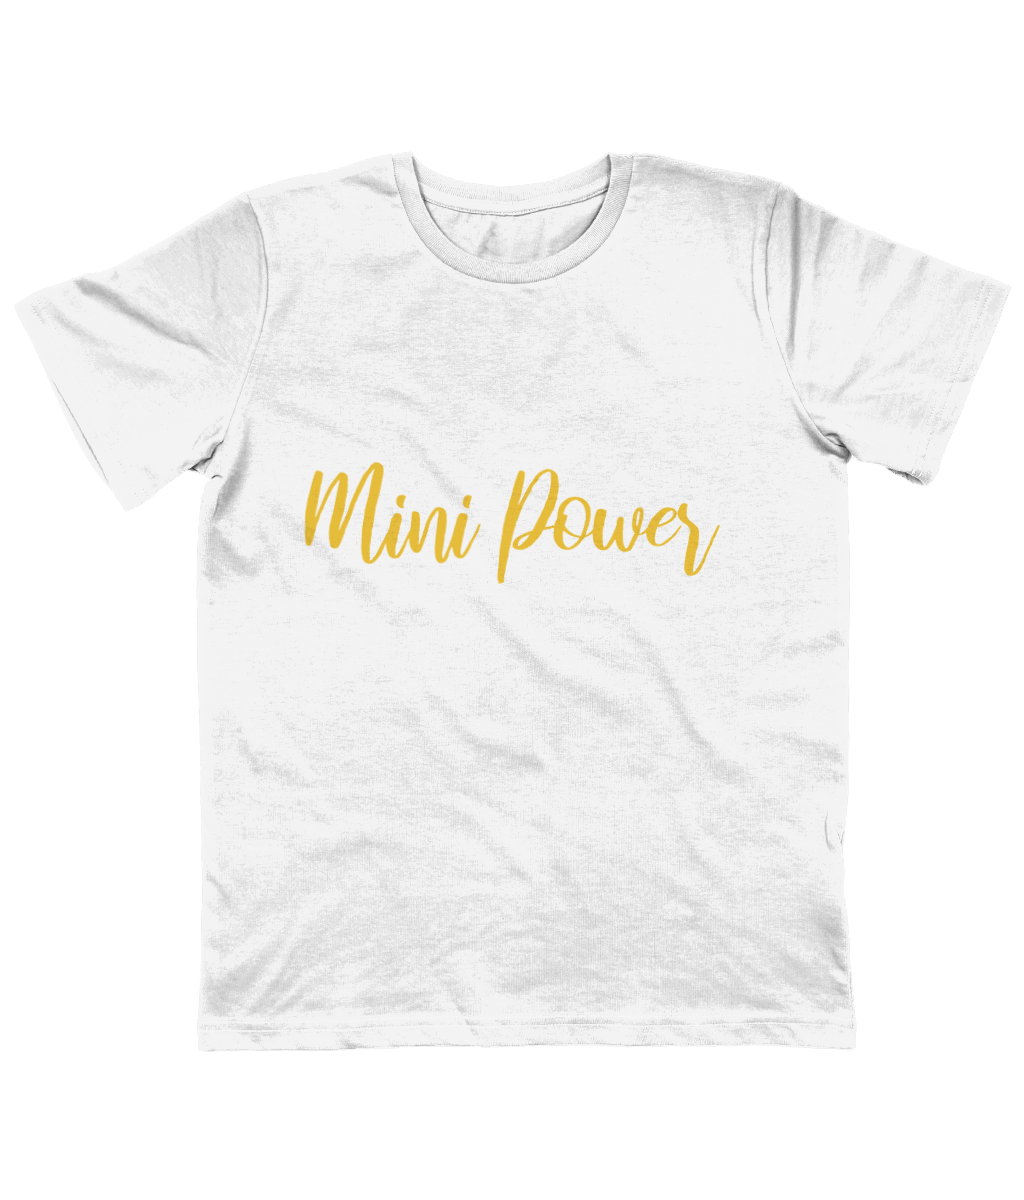 Mini Power - organic kid T-shirt - Yellow.